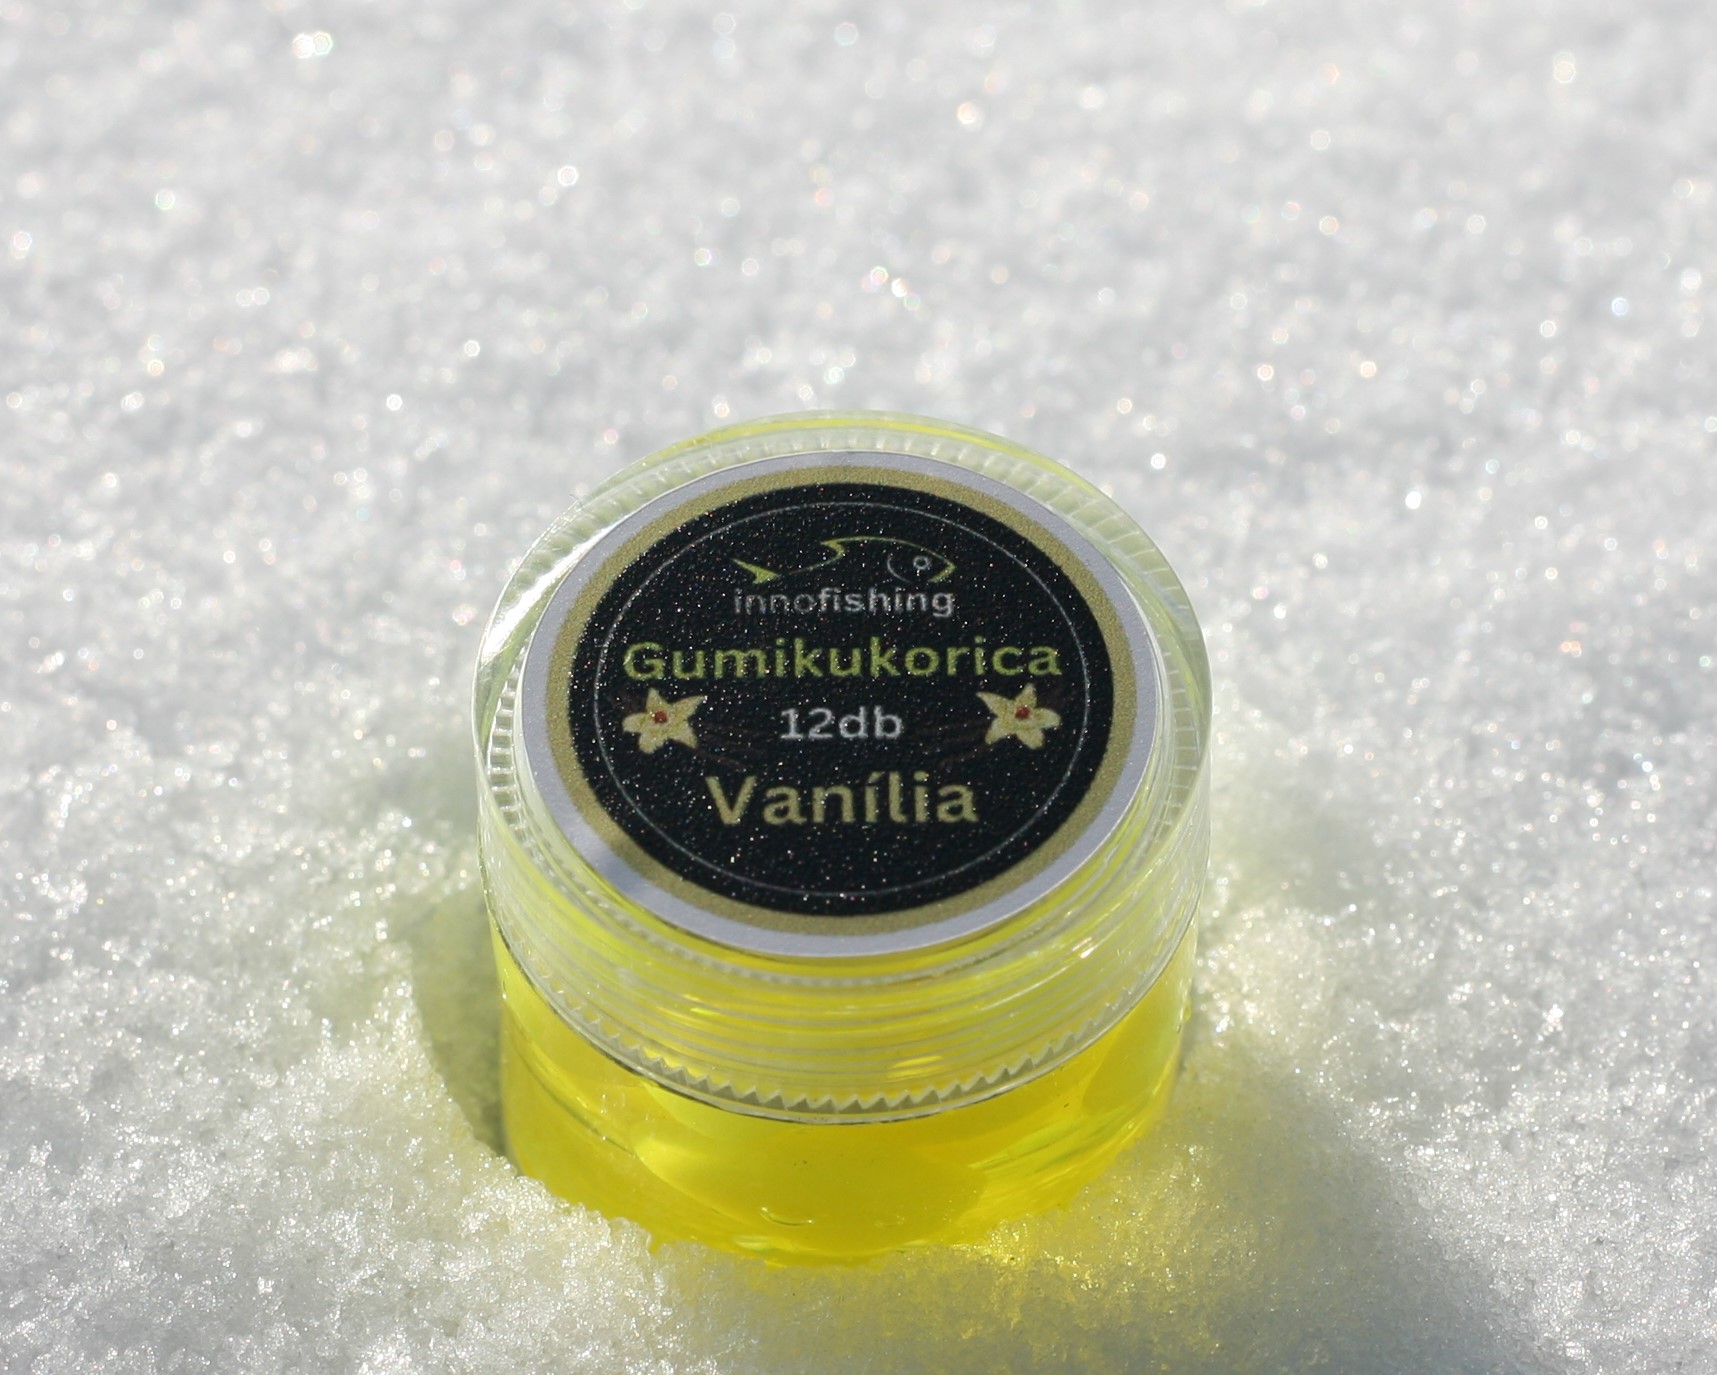 Innofishing gumikukorica vanília